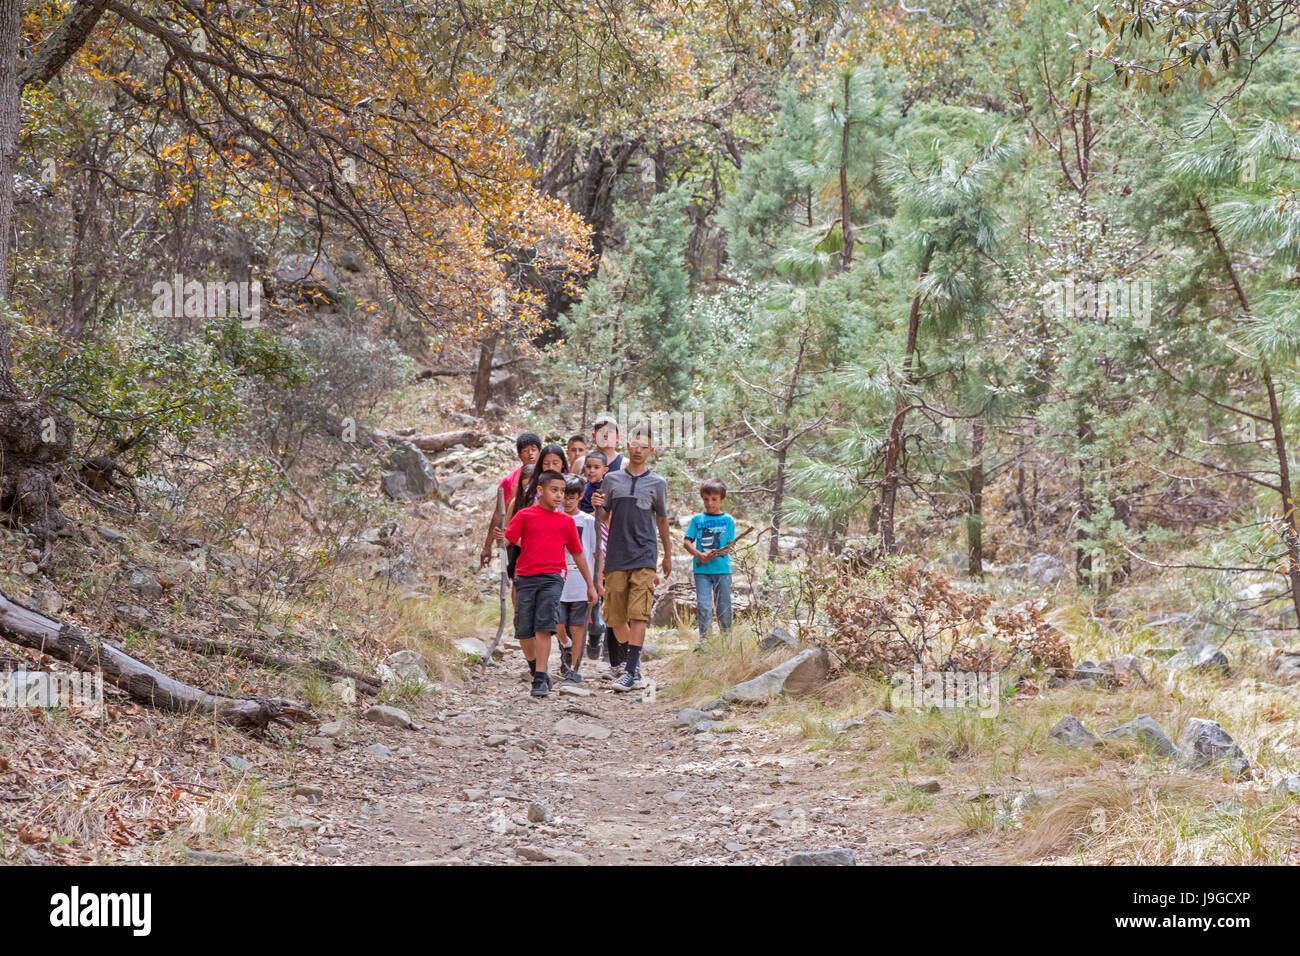 Continental, Arizona - hispanischen Kinder Wandern auf dem Wanderweg Carrie Nation Madera Canyon, einer beliebten Gegend der US Forest Service in Santa Ri Stockfoto